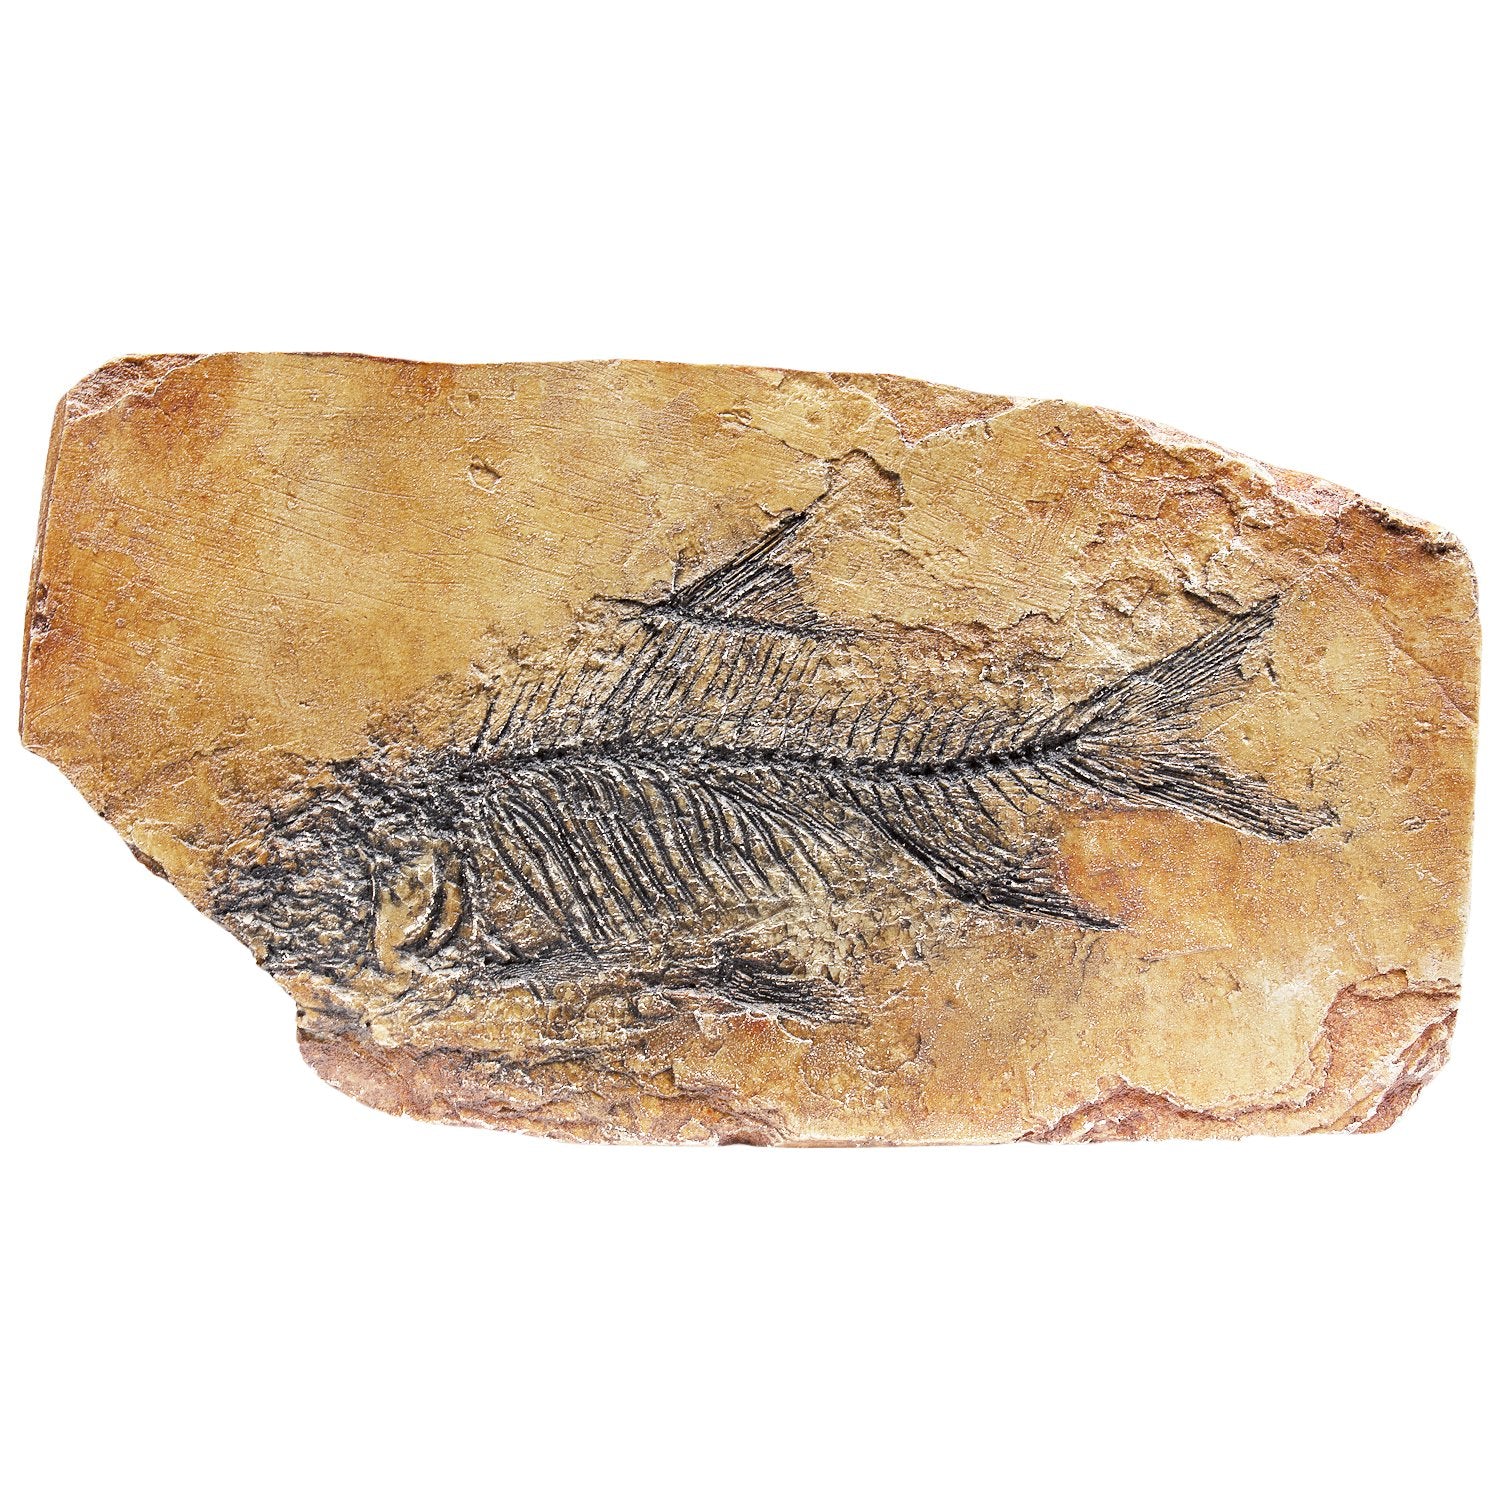 MR Fish Fossil in Shale Replica